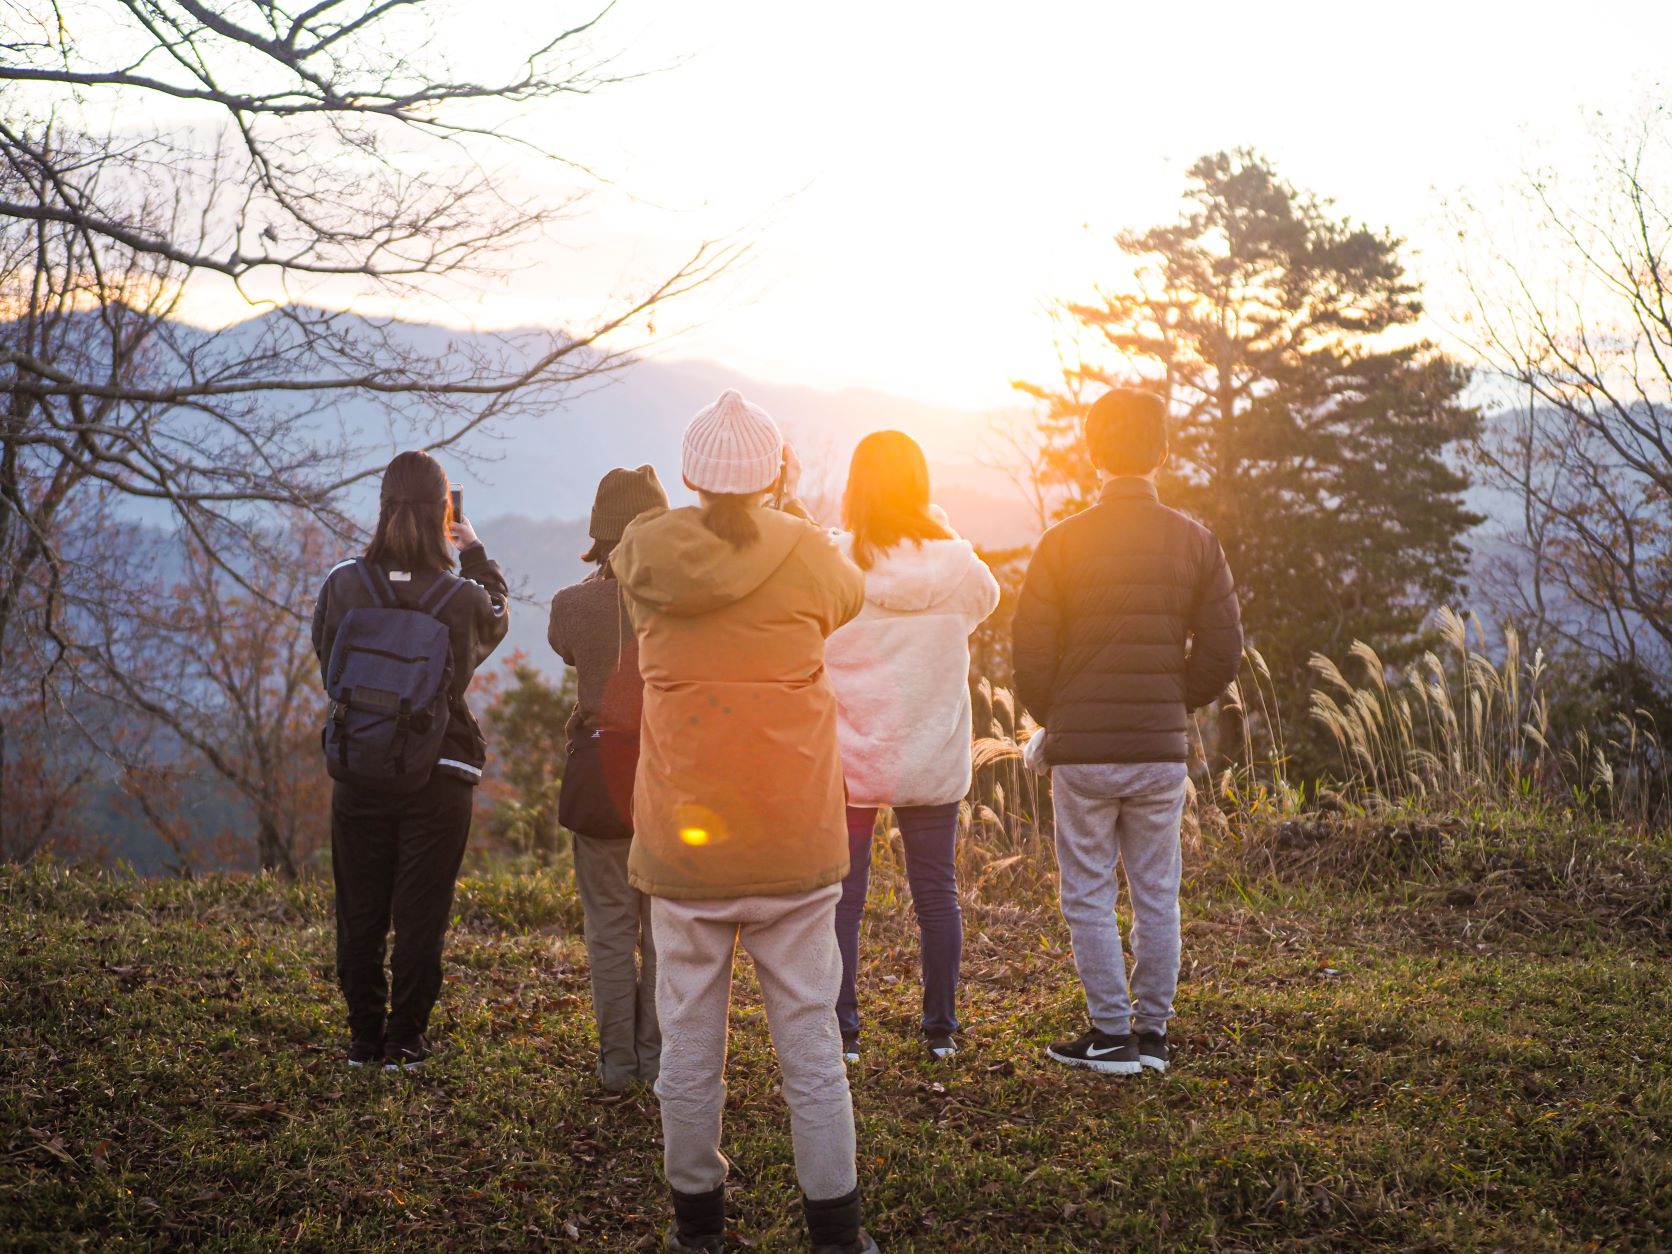 ツアー参加者が、山頂から朝日をながめたり写真を撮っている